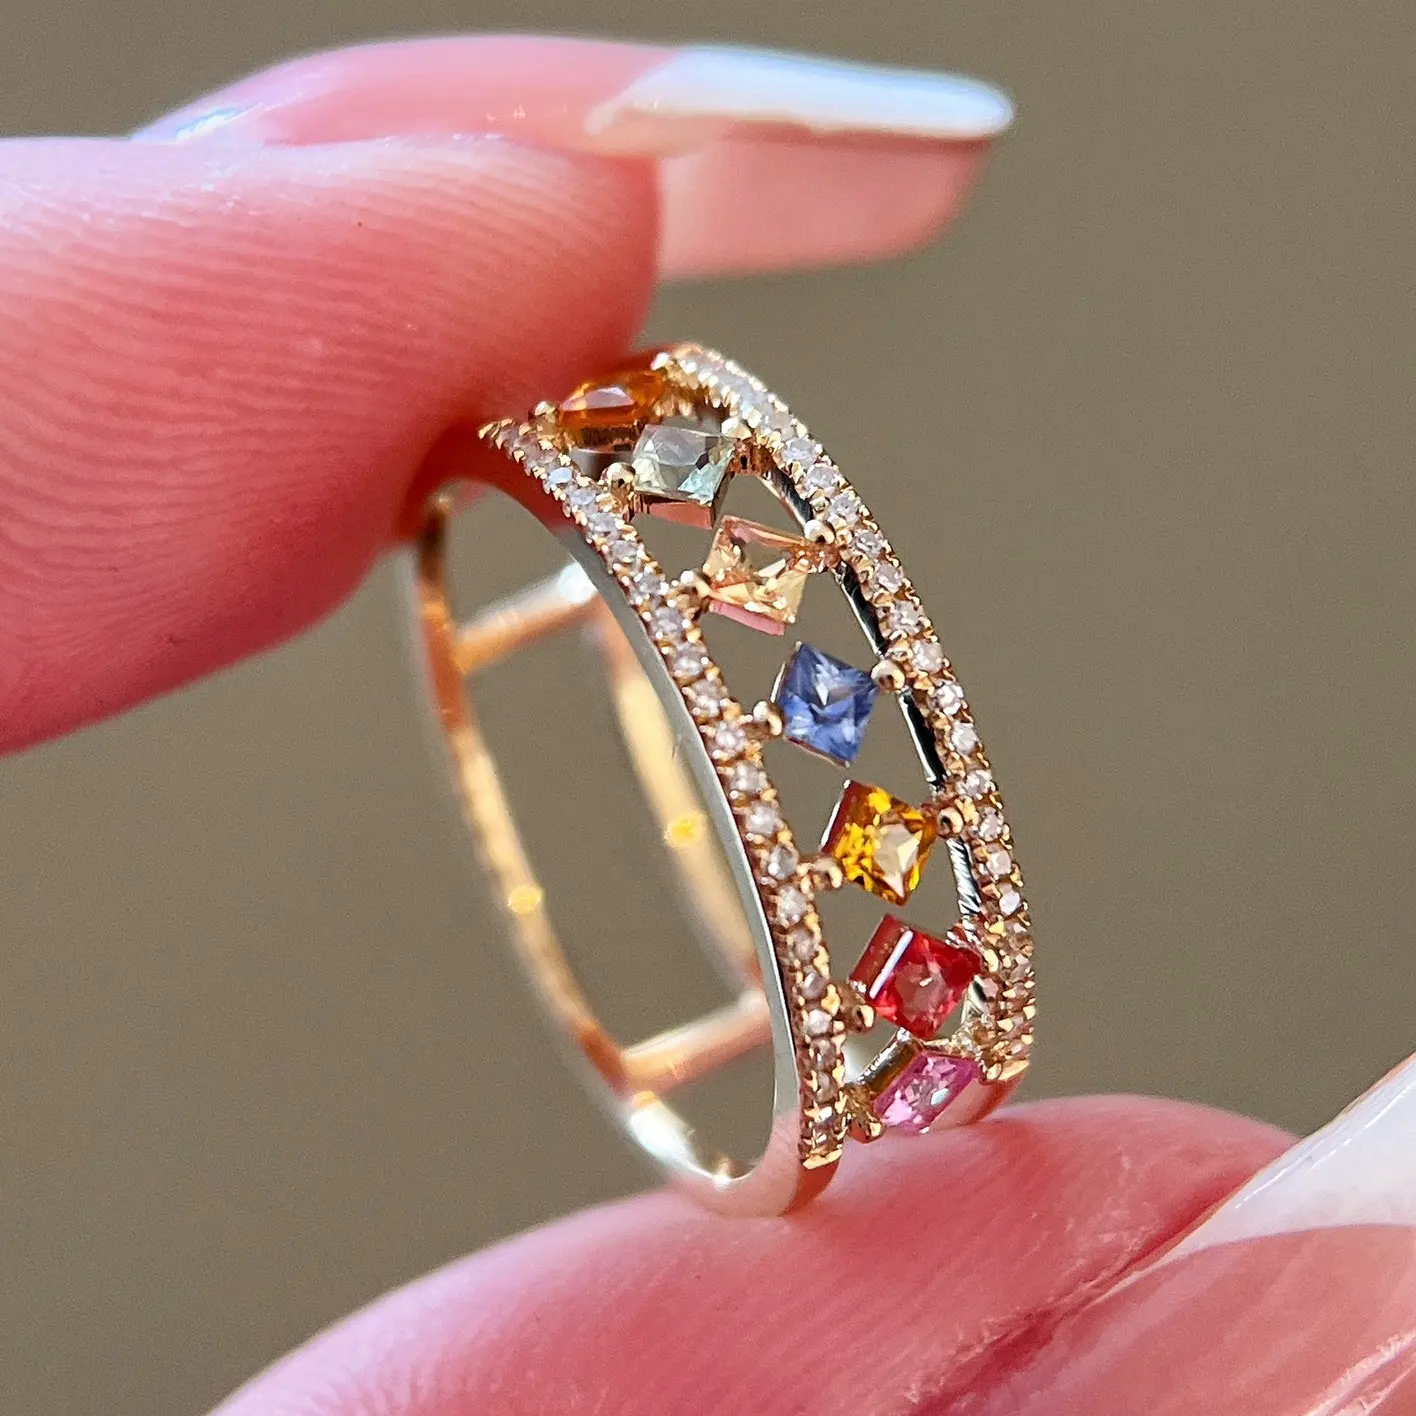 Xinfly perhiasan merek 18k emas murni mewah warna-warni safir cincin berlian alami